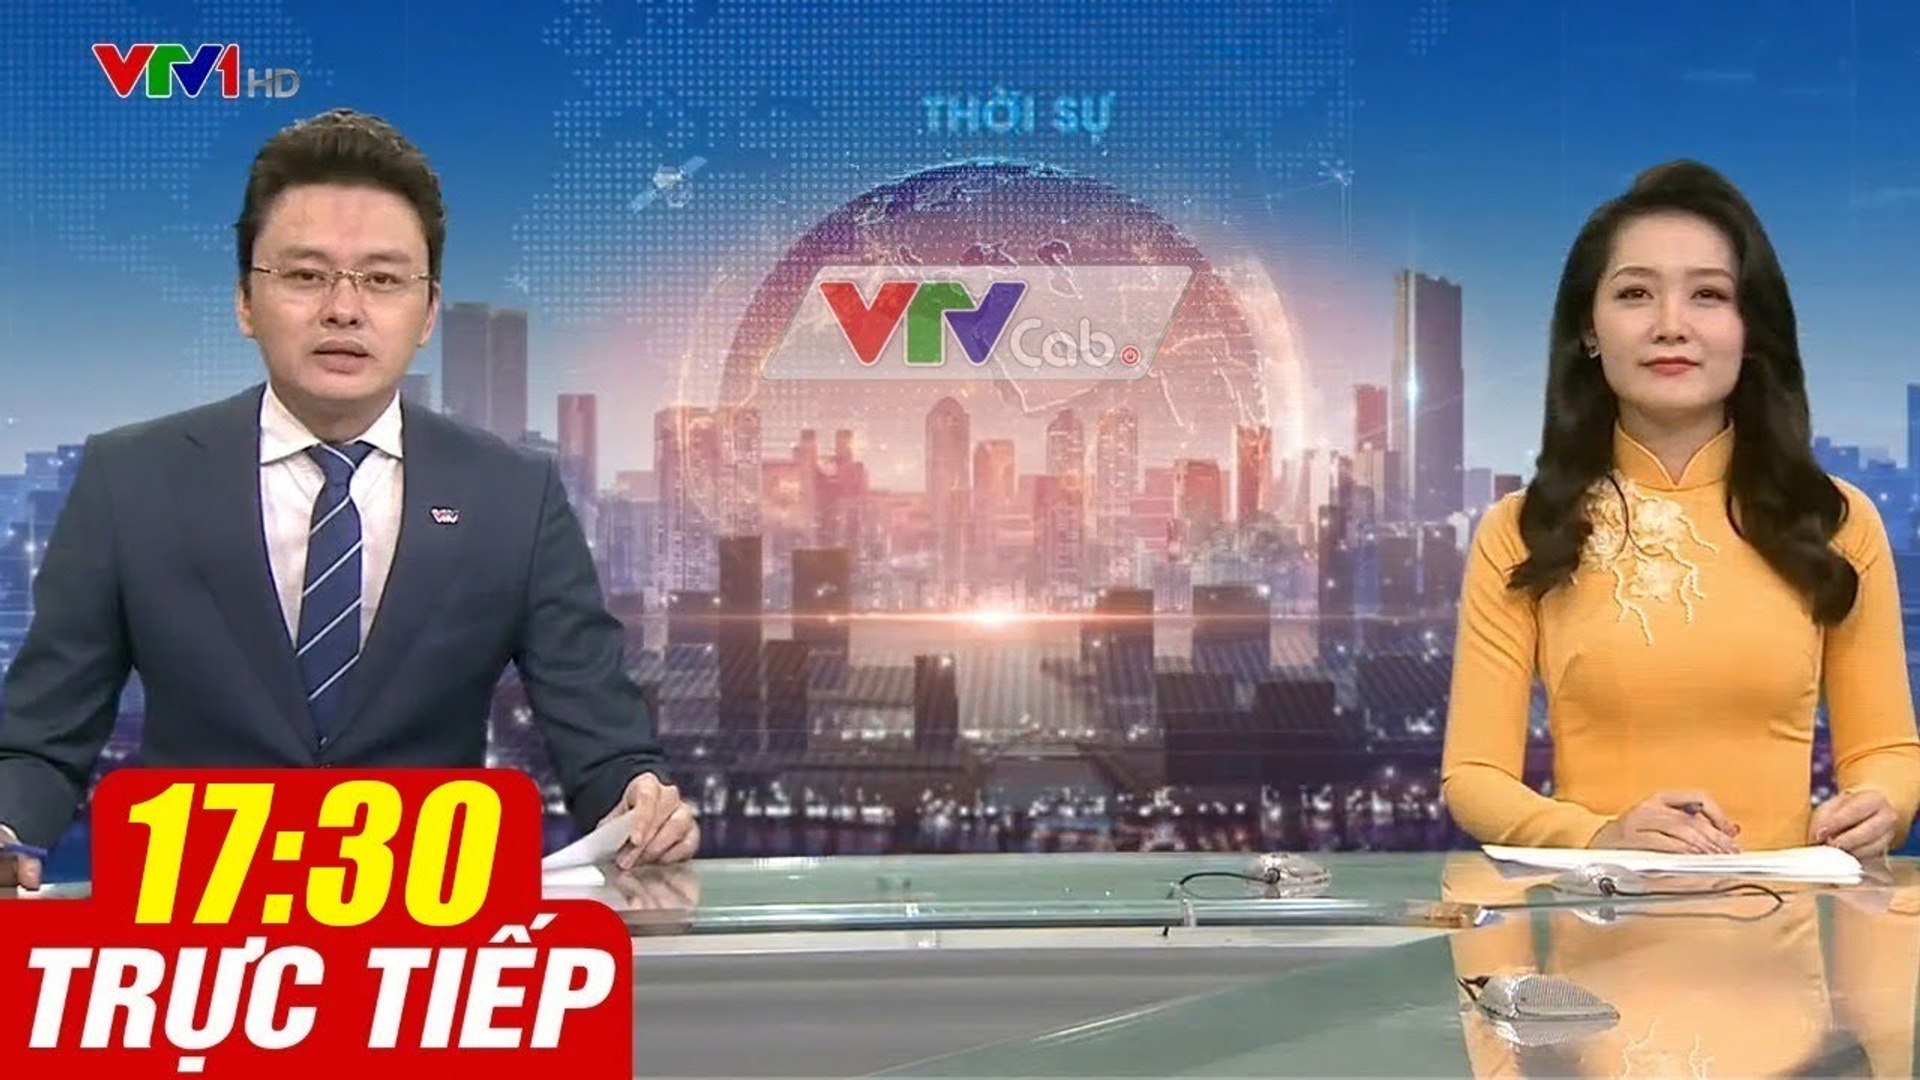 Trực Tiếp VIỆT NAM HÔM NAY 17h30 ngày 1.10.2020  Tin tức thời sự VTV1 mới nhất hôm nay